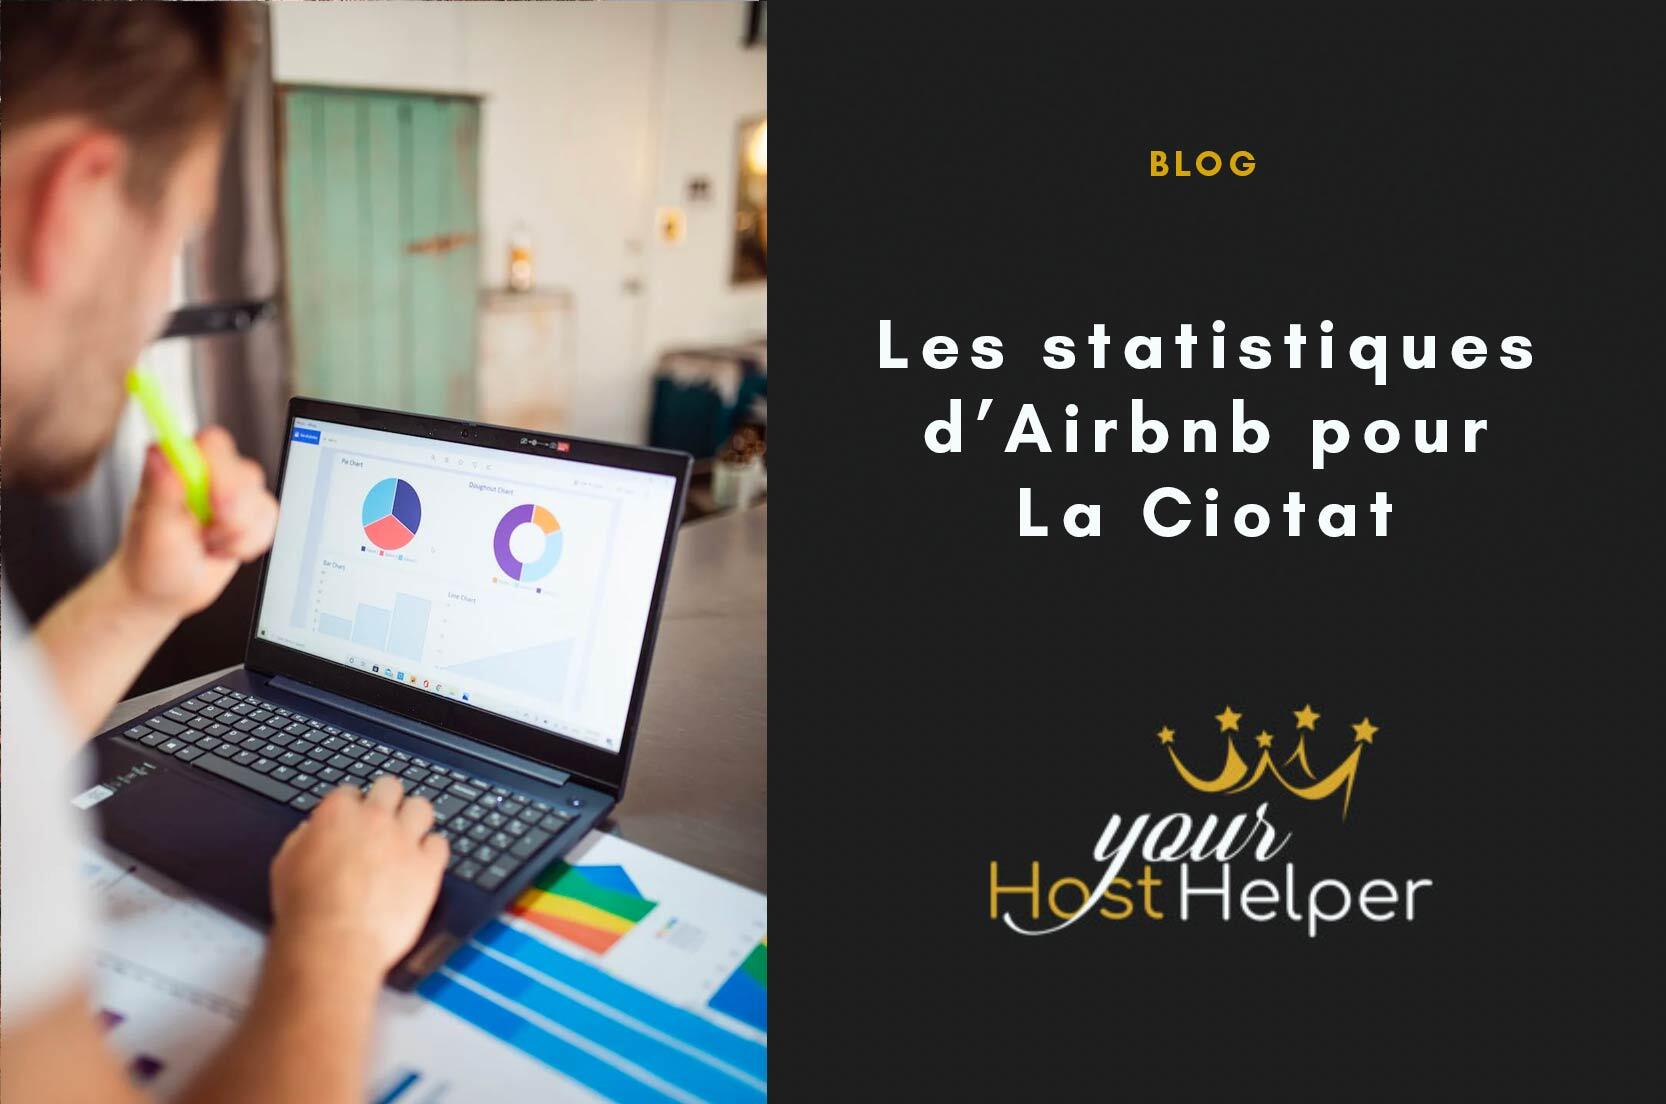 You are currently viewing Les statistiques Airbnb de La Ciotat détaillées par notre conciergerie